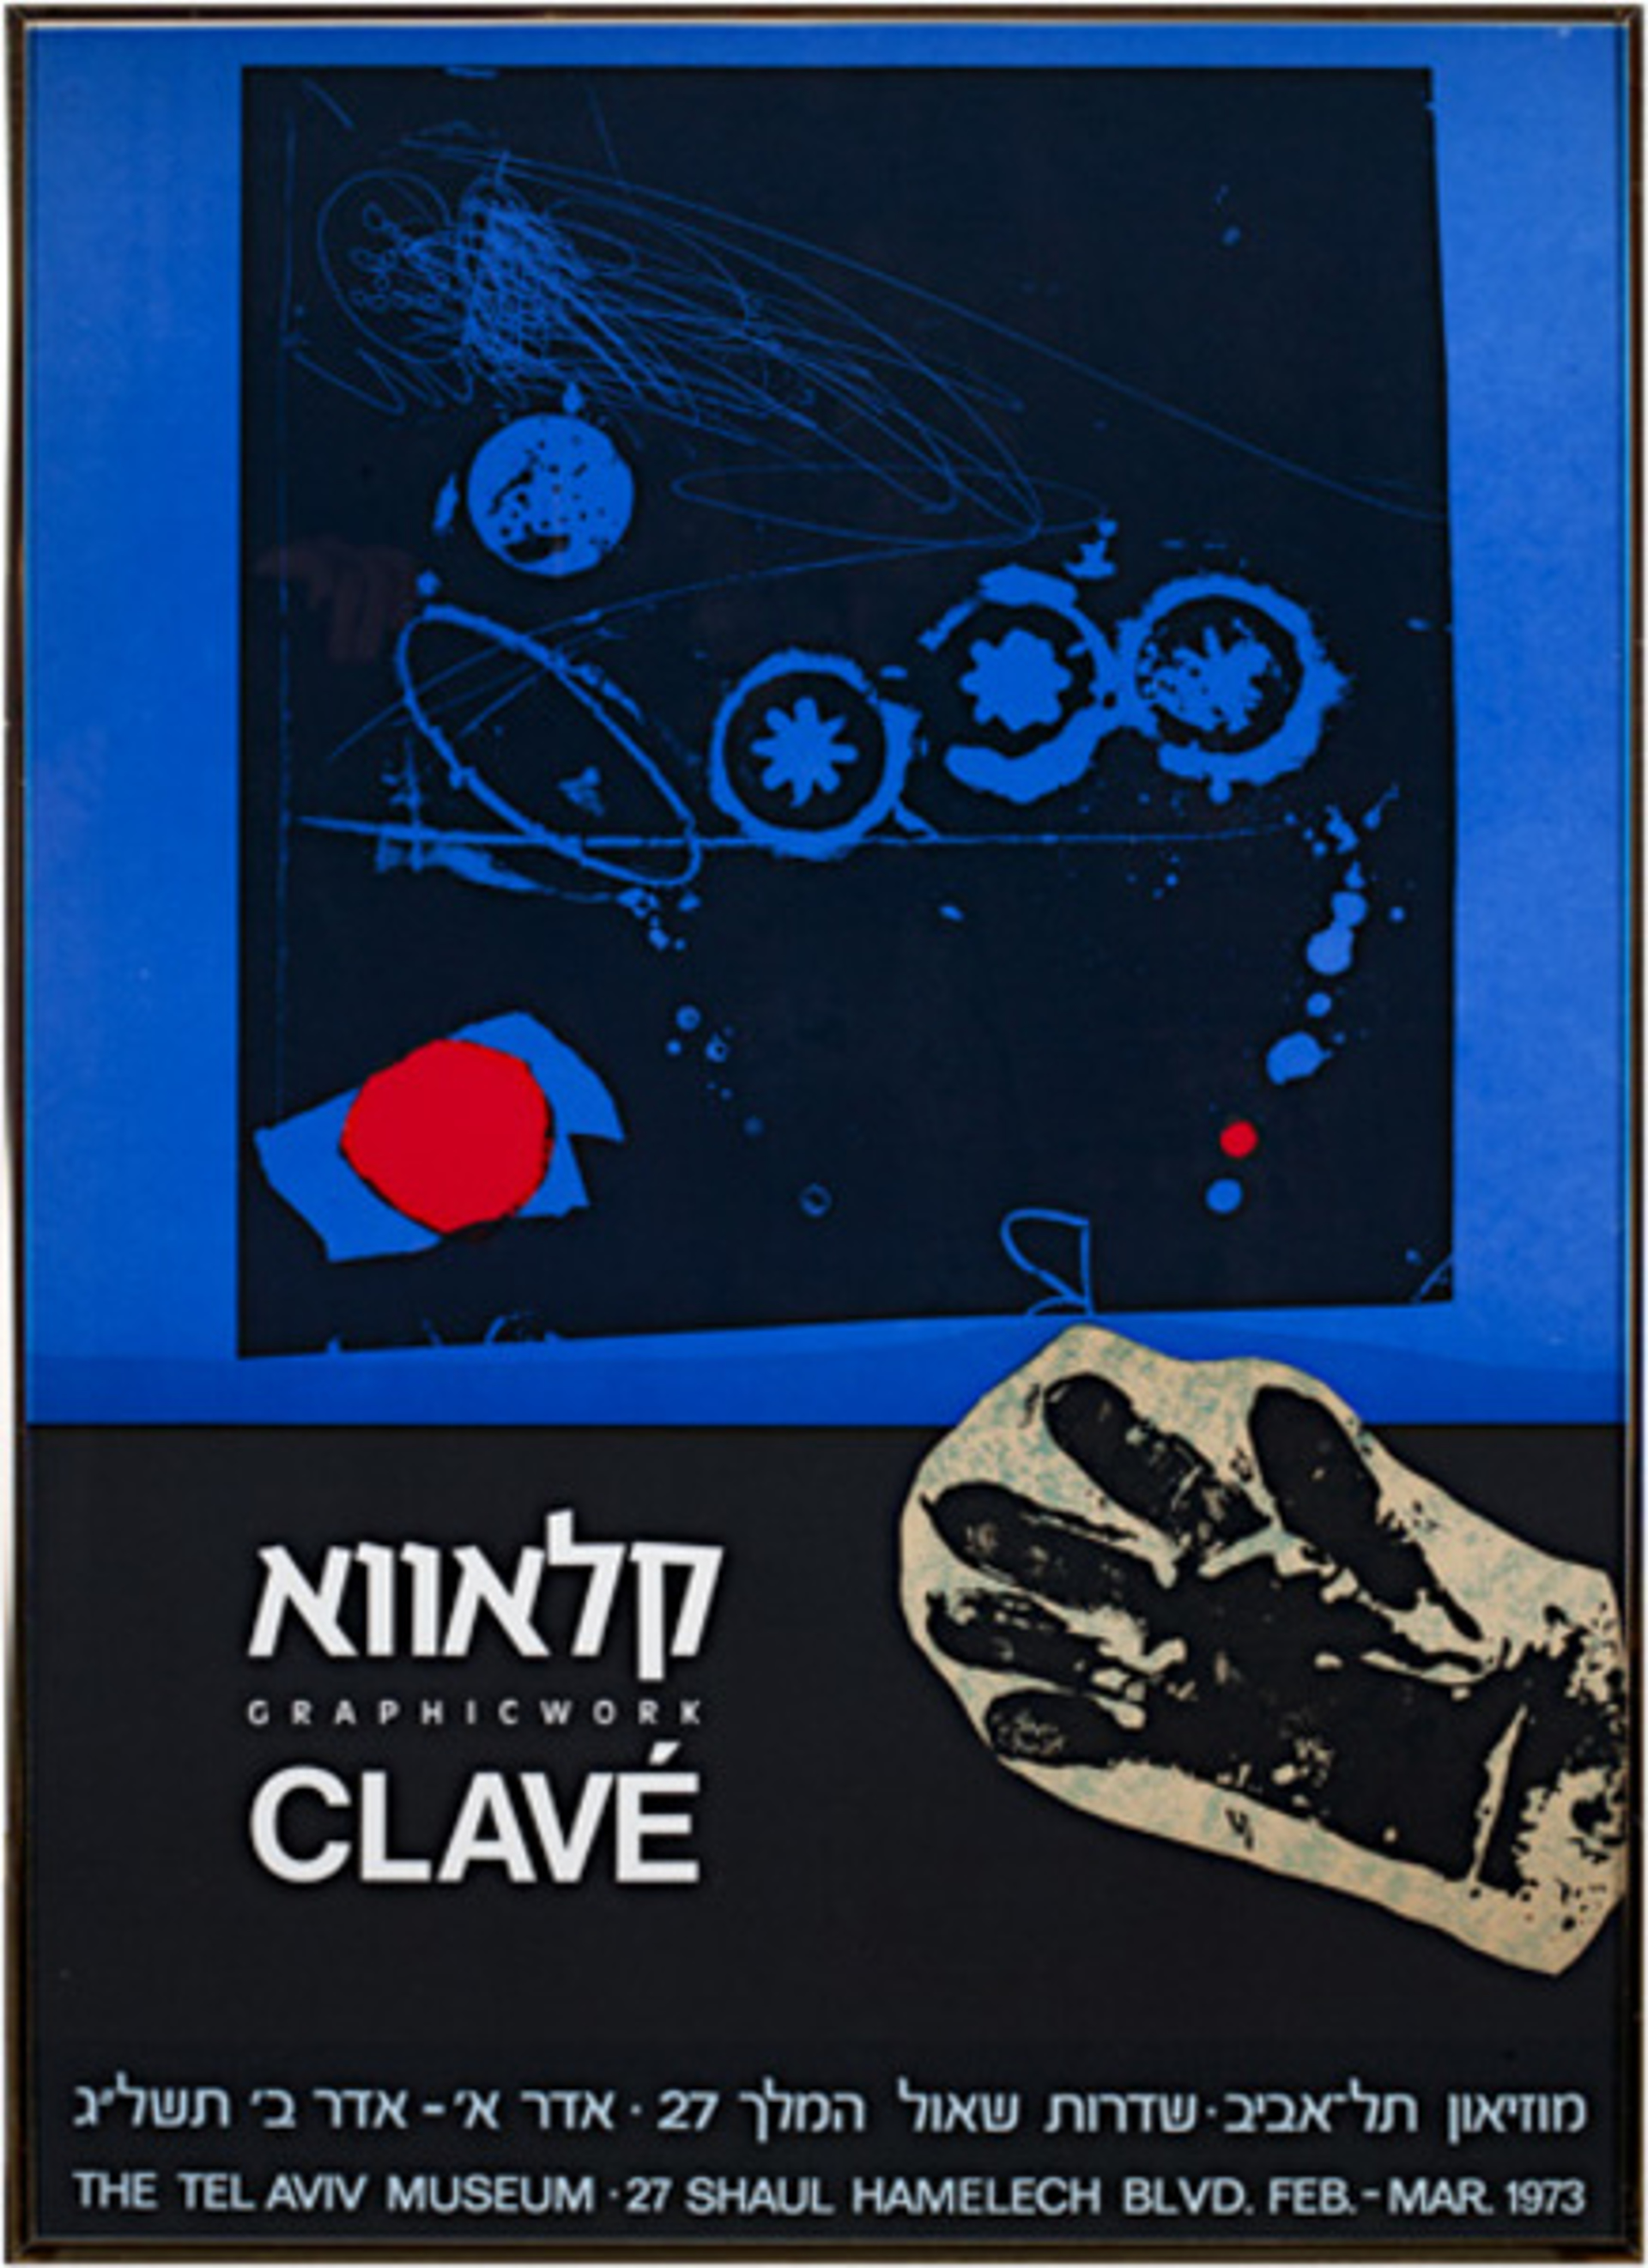 Tel Aviv Museum Exhibition Poster by Antonio Clave